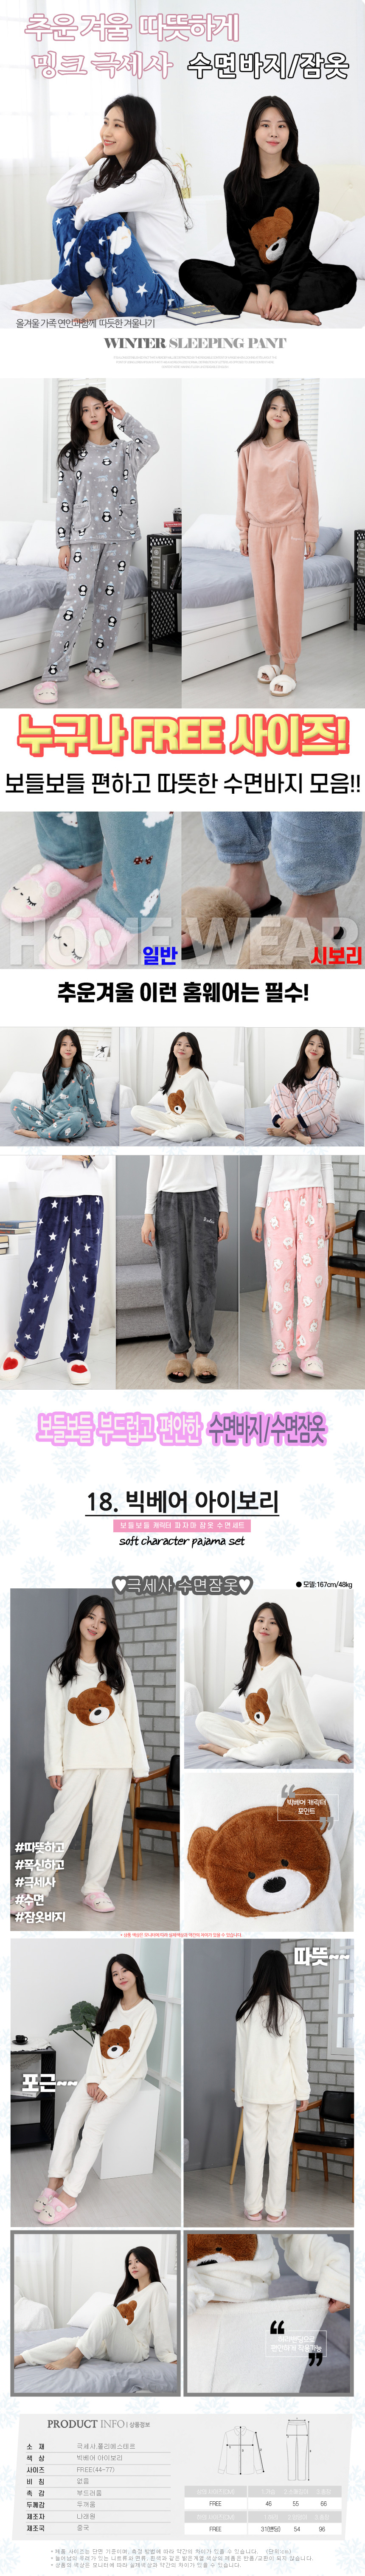 sleeping_pajamas_set_18.jpg